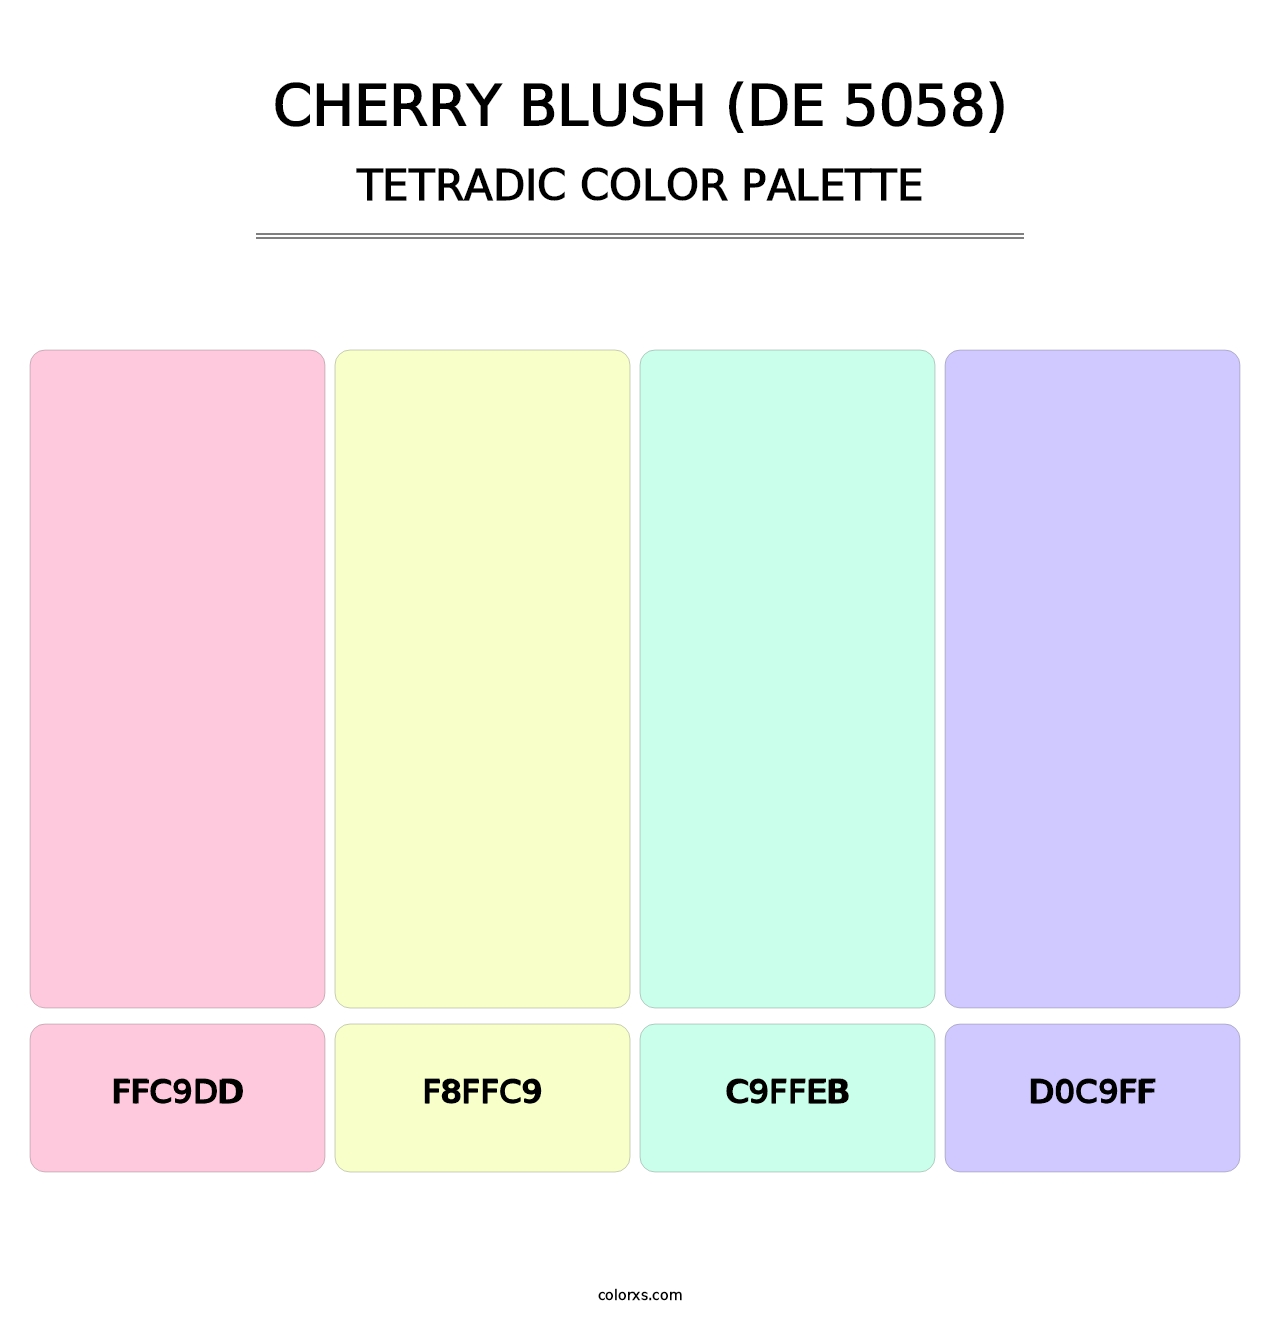 Cherry Blush (DE 5058) - Tetradic Color Palette